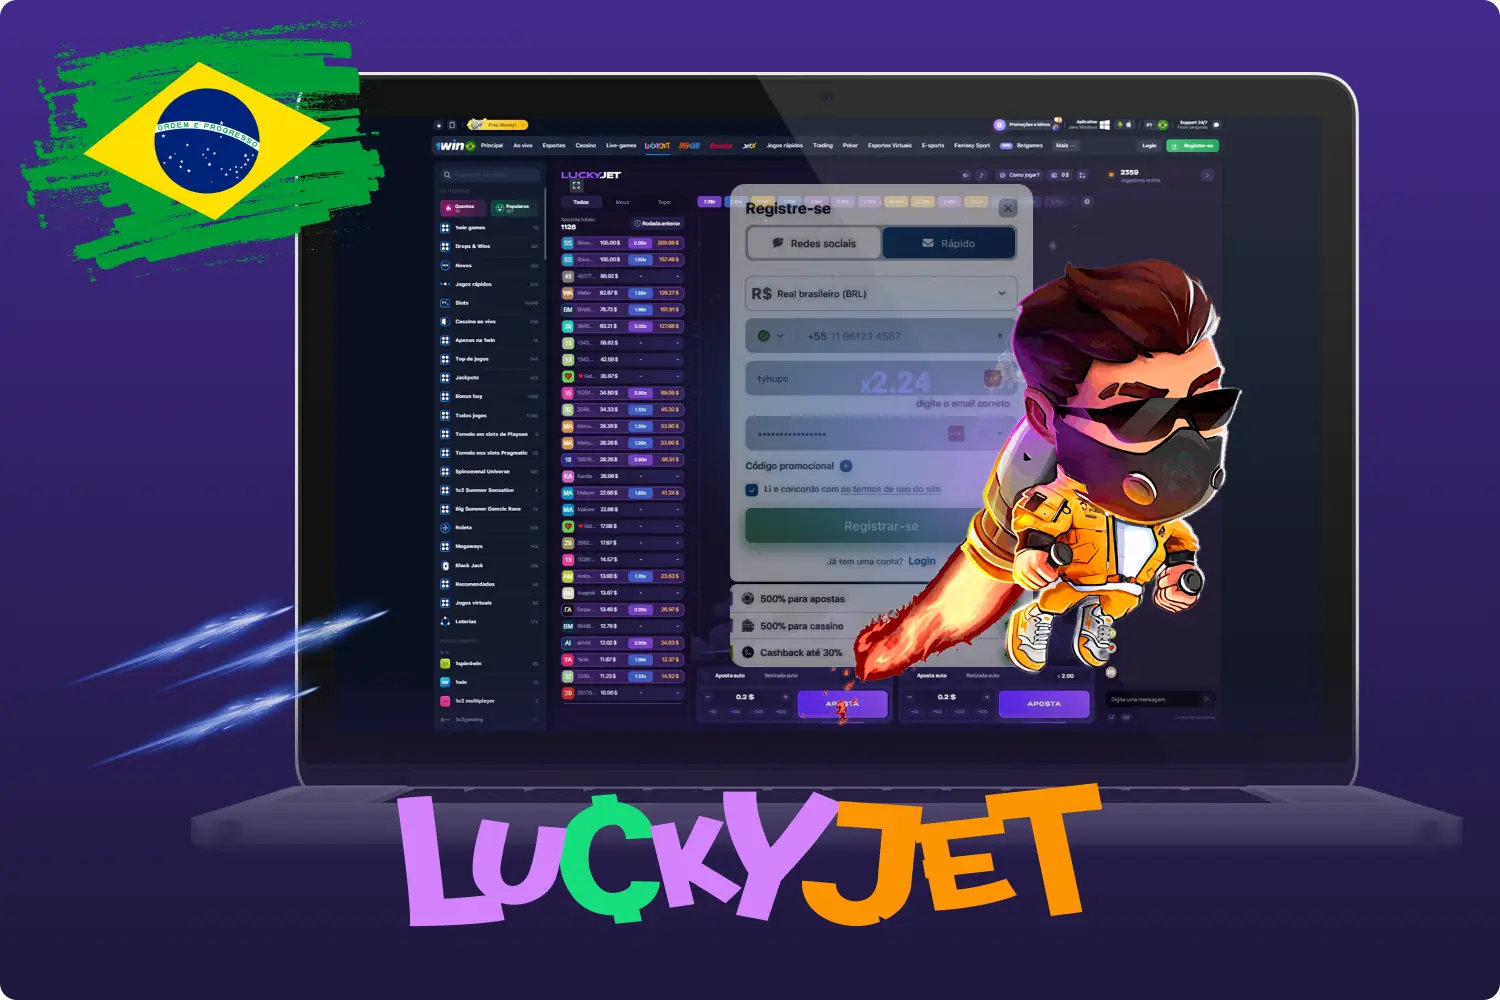 Depois de criar uma conta no 1win, os brasileiros podem apostar na mais vasta gama de desportos e em vários jogos de casino, incluindo o emocionante jogo de queda Lucky Jet